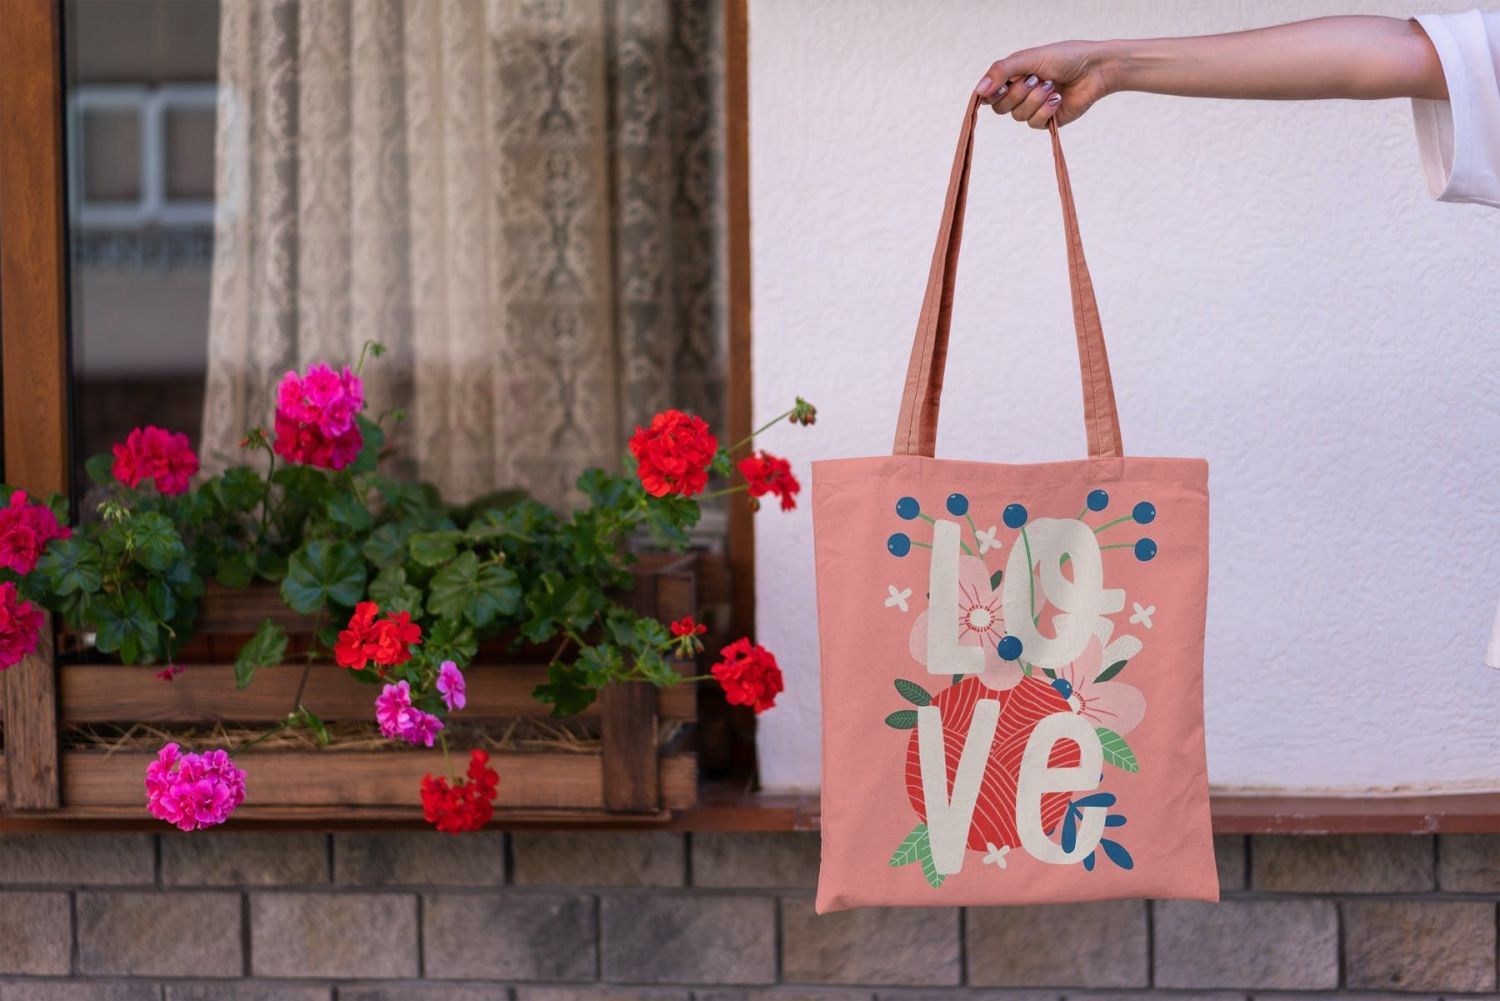 帆布手提包样机生活方式 Canvas Tote Bag Mock-Up Lifestyle插图8